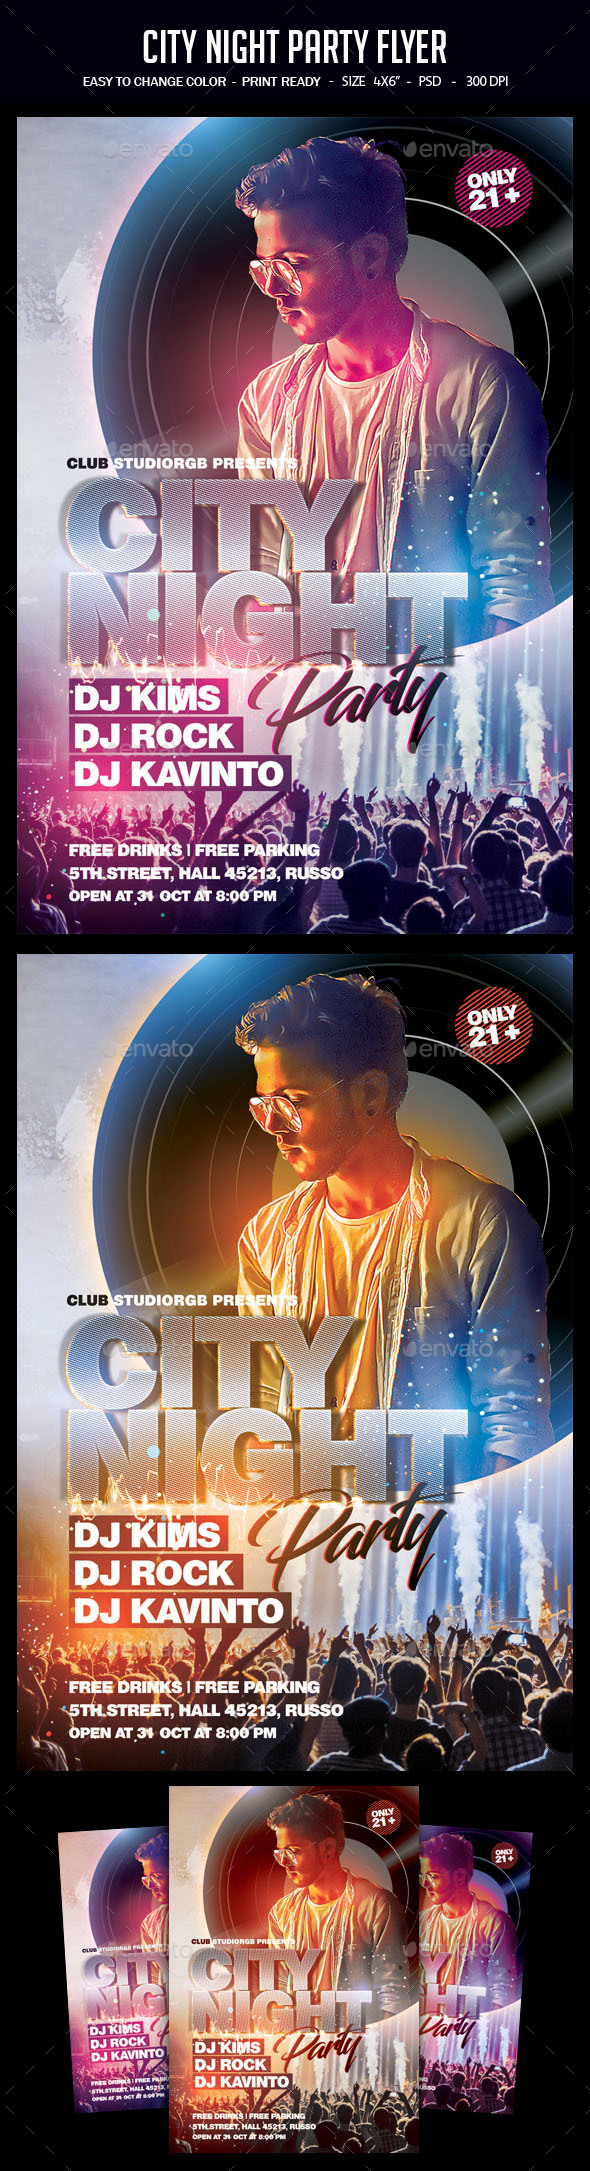 城市夜间派对海报模板下载 City Night Party Flyer[psd]插图